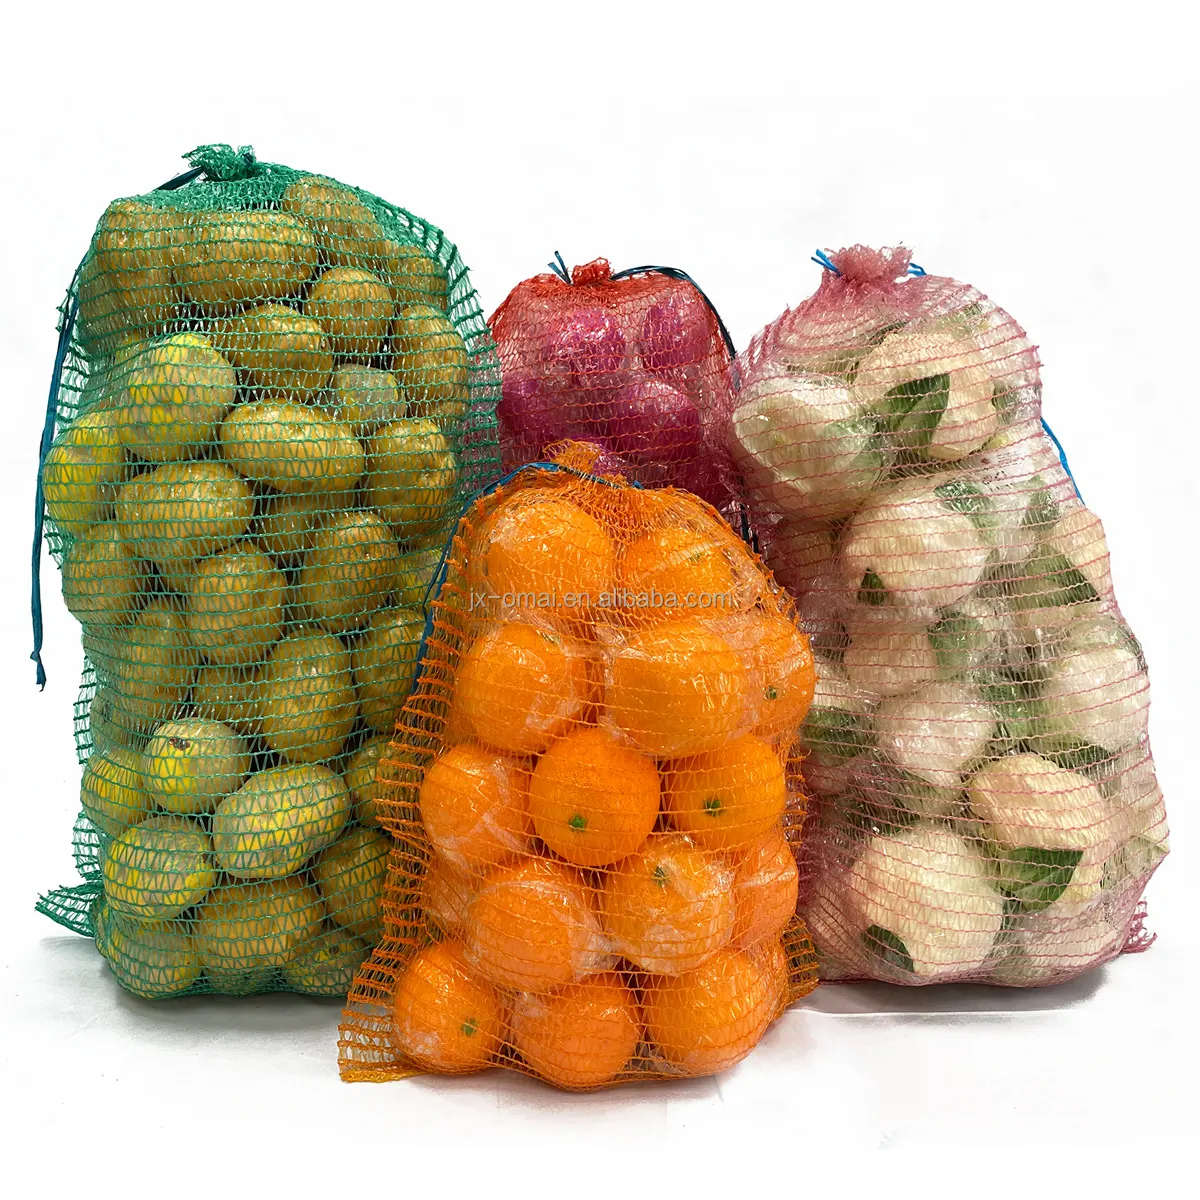 ラッシェルメッシュバッグネットオニオンポテト野菜包装袋フルーツメッシュバッグ